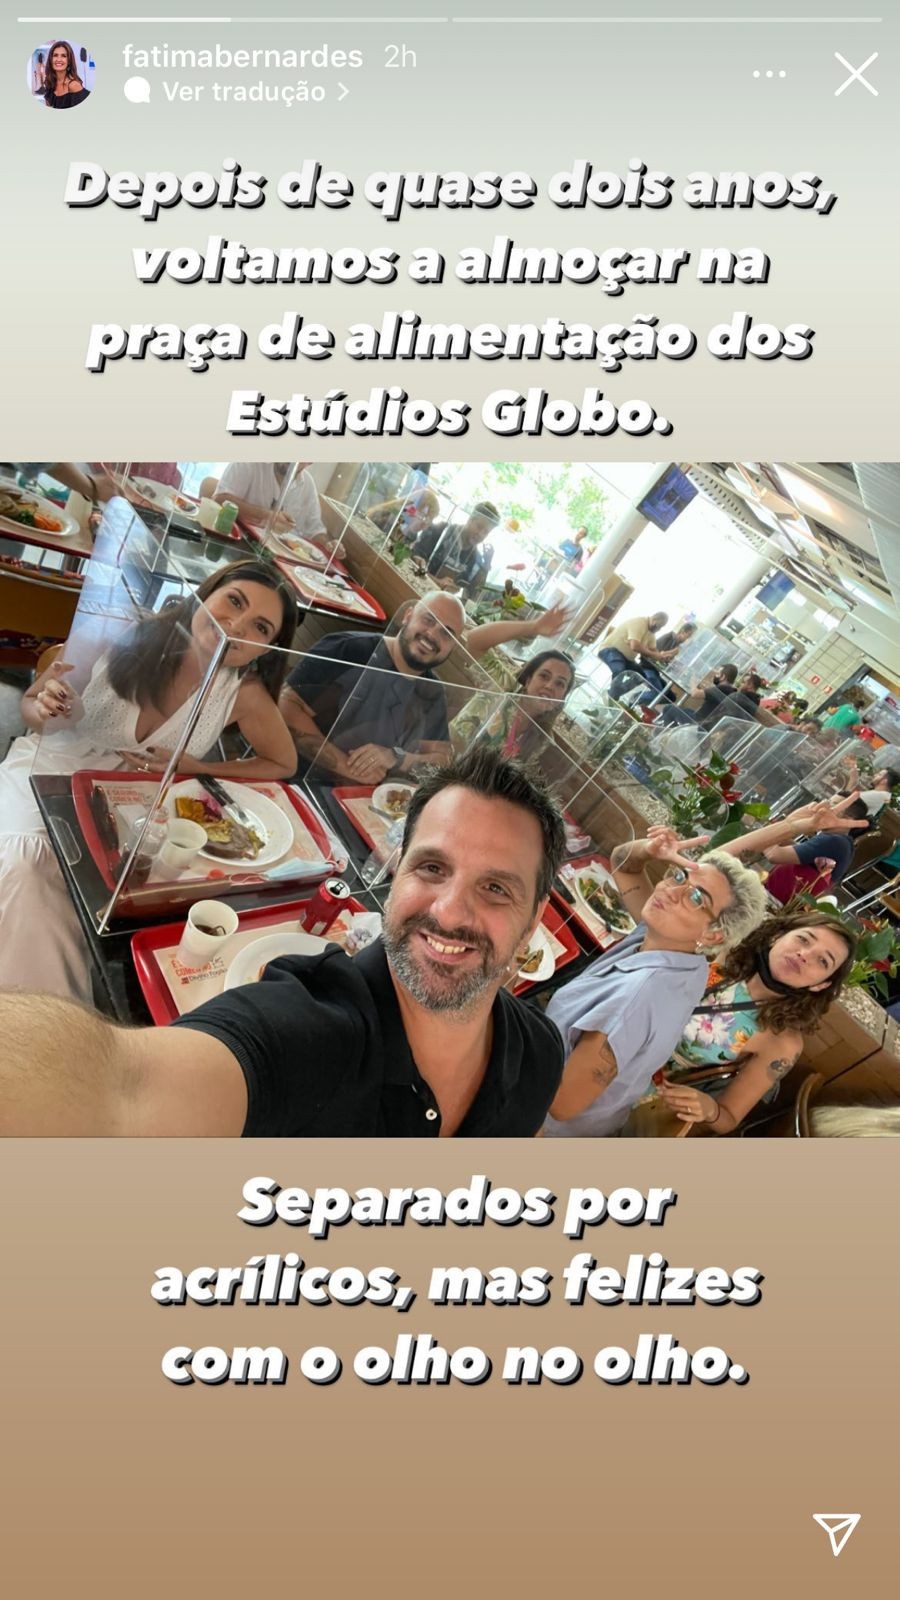 Fátima Bernardes comemora almoçar em refeitório dos Estúdios Globo (Foto: Reprodução/Instagram)